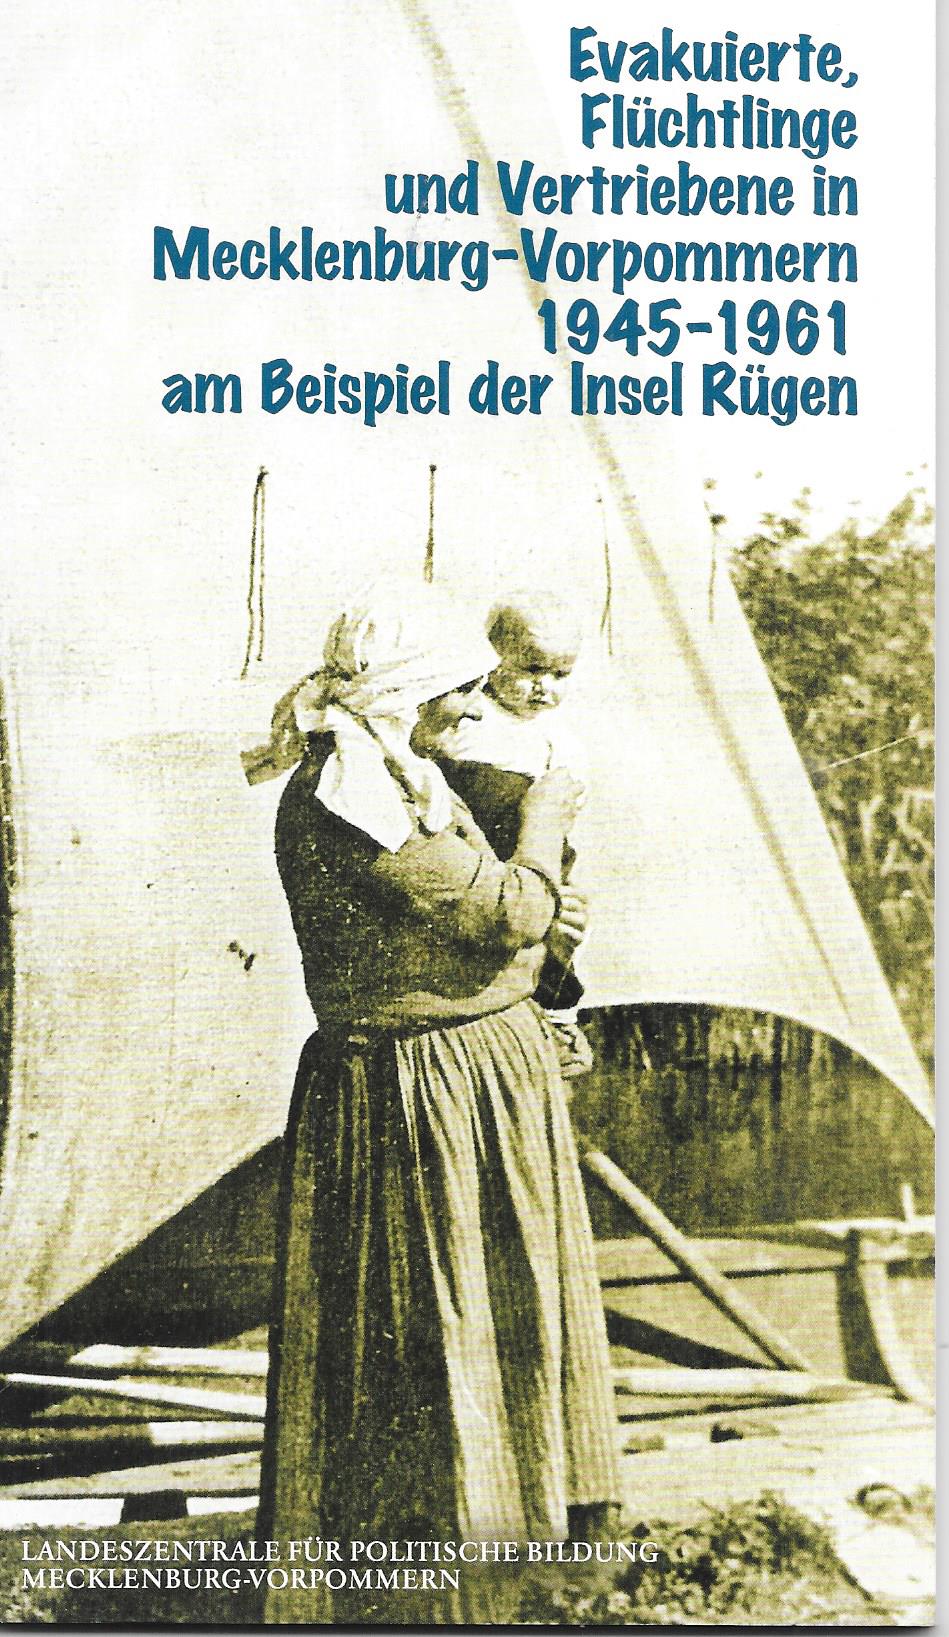 Evakuierte, Flüchtlinge und Vertriebene in Mecklenburg-Vorpommern 1945 bis 1961 am Beispiel der Insel Rügen - Martin Holz - Landeszentrale für politische Bildung Mecklenburg-Vorpommern